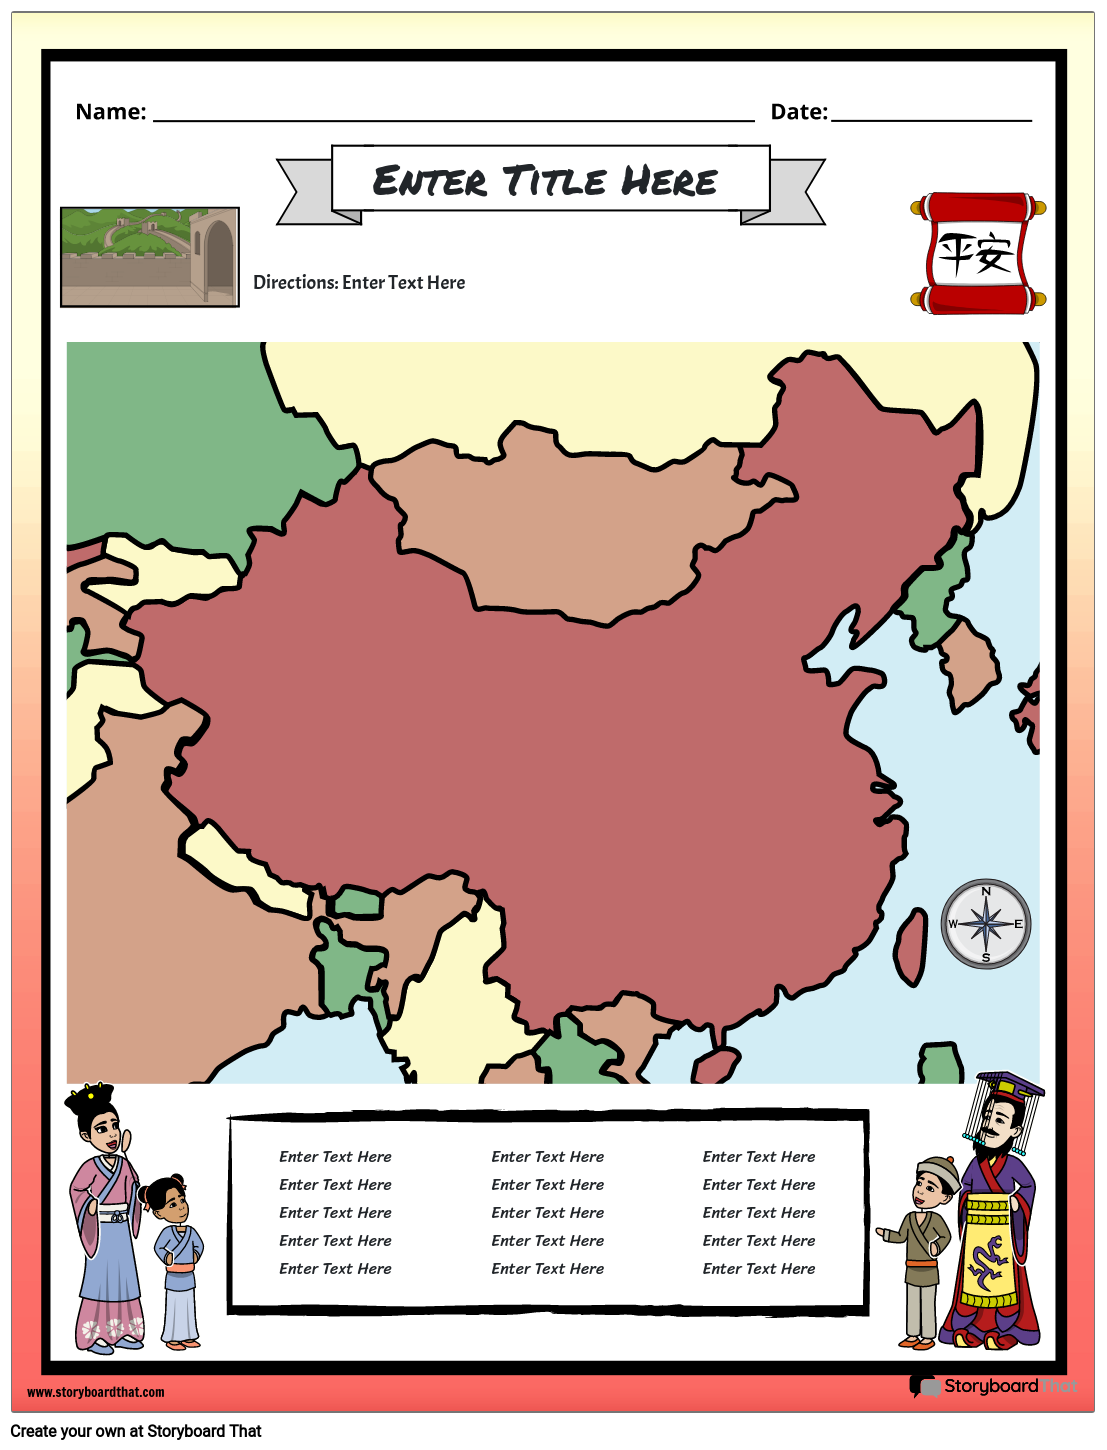 प्राचीन चीन का नक्शा